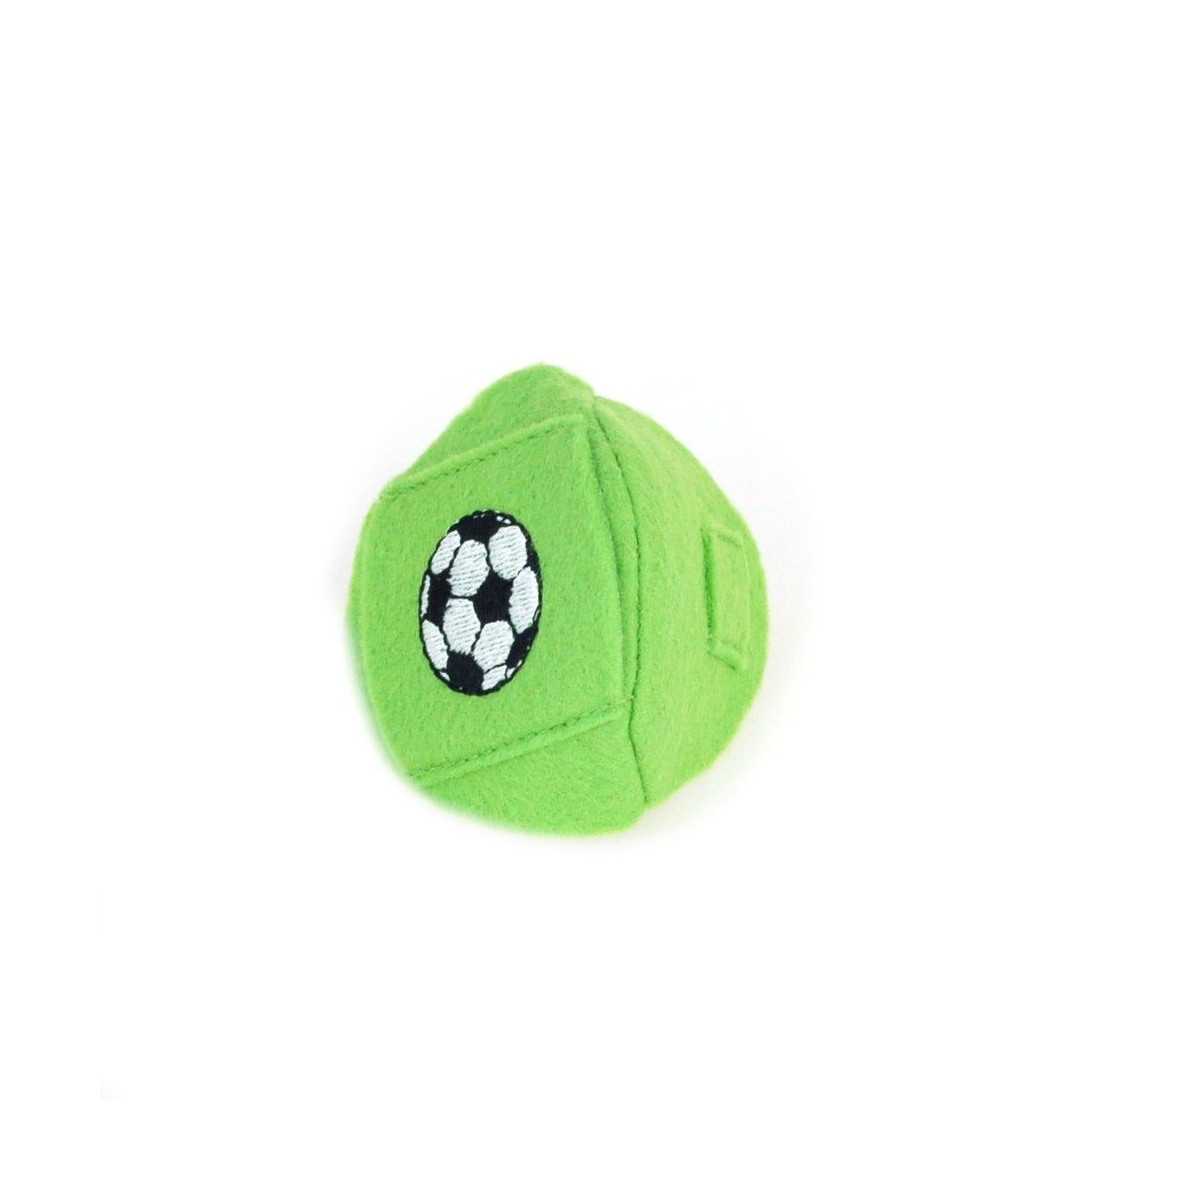 Okluzor textilný nasúvací - zelený lopta obojstranný - 3